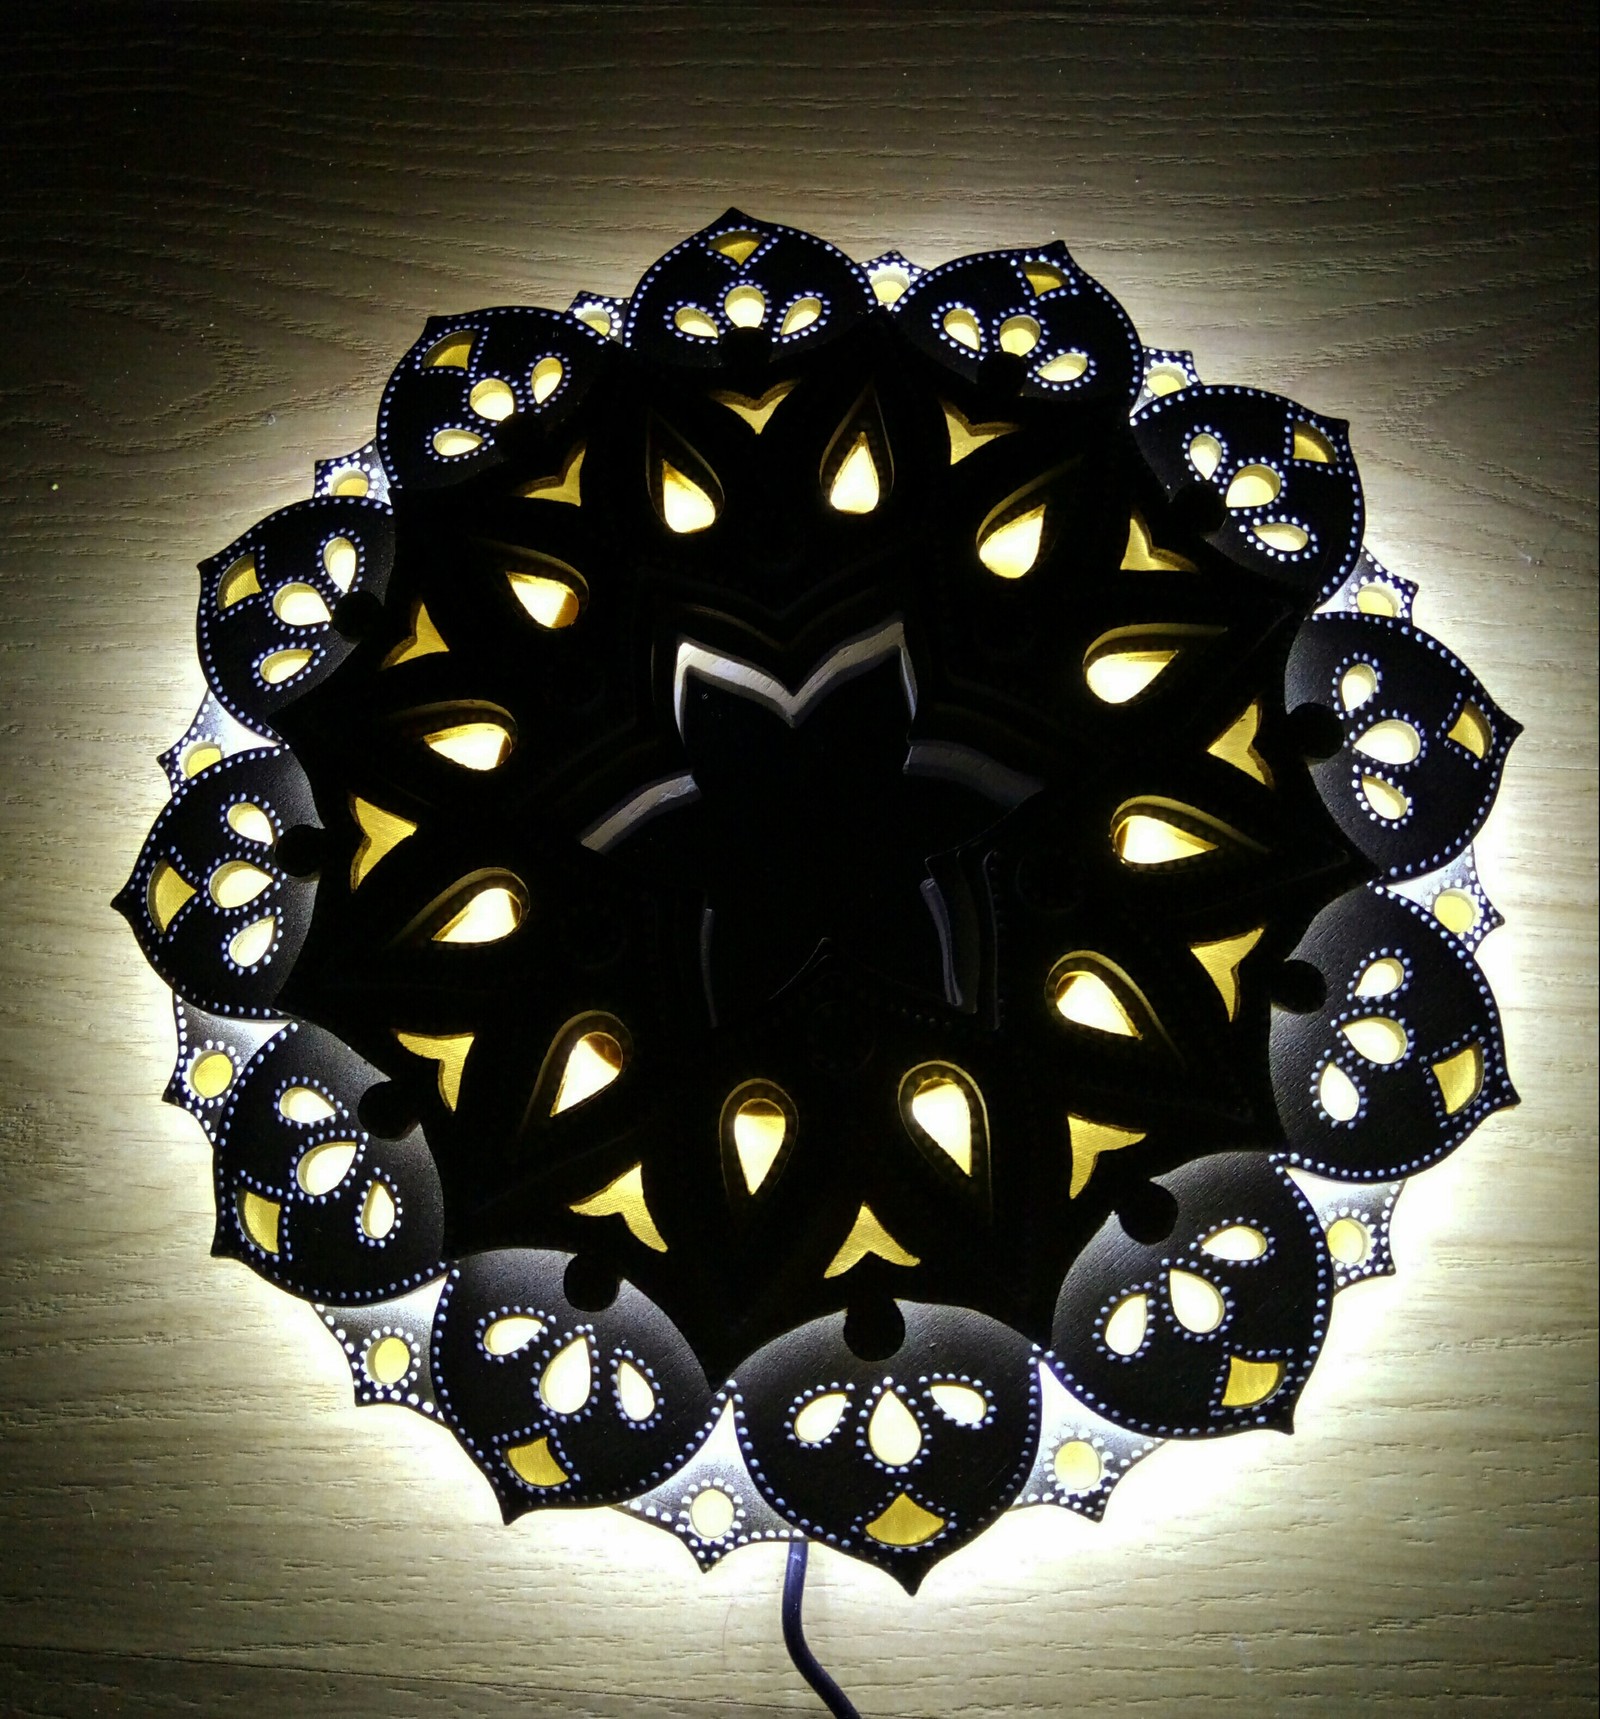 Mandala wall a la night light - My, Mandala, Jigsaw, Night light, Needlework, Longpost